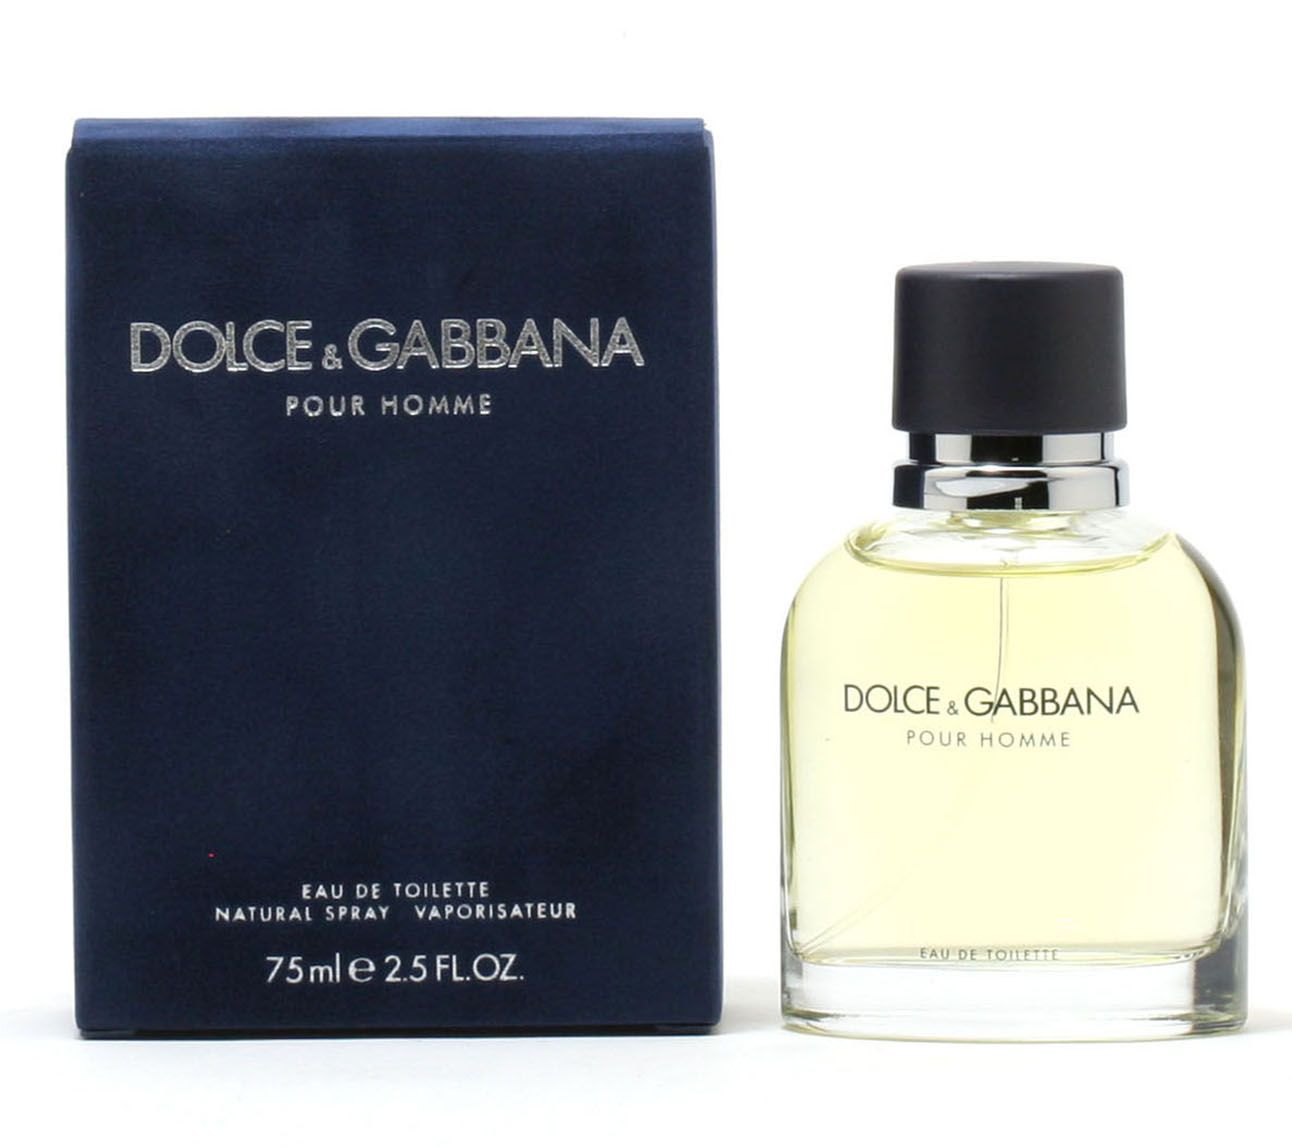 Dolce & Gabbana Pour Homme Eau De Toilette, 2.5-fl oz - QVC.com